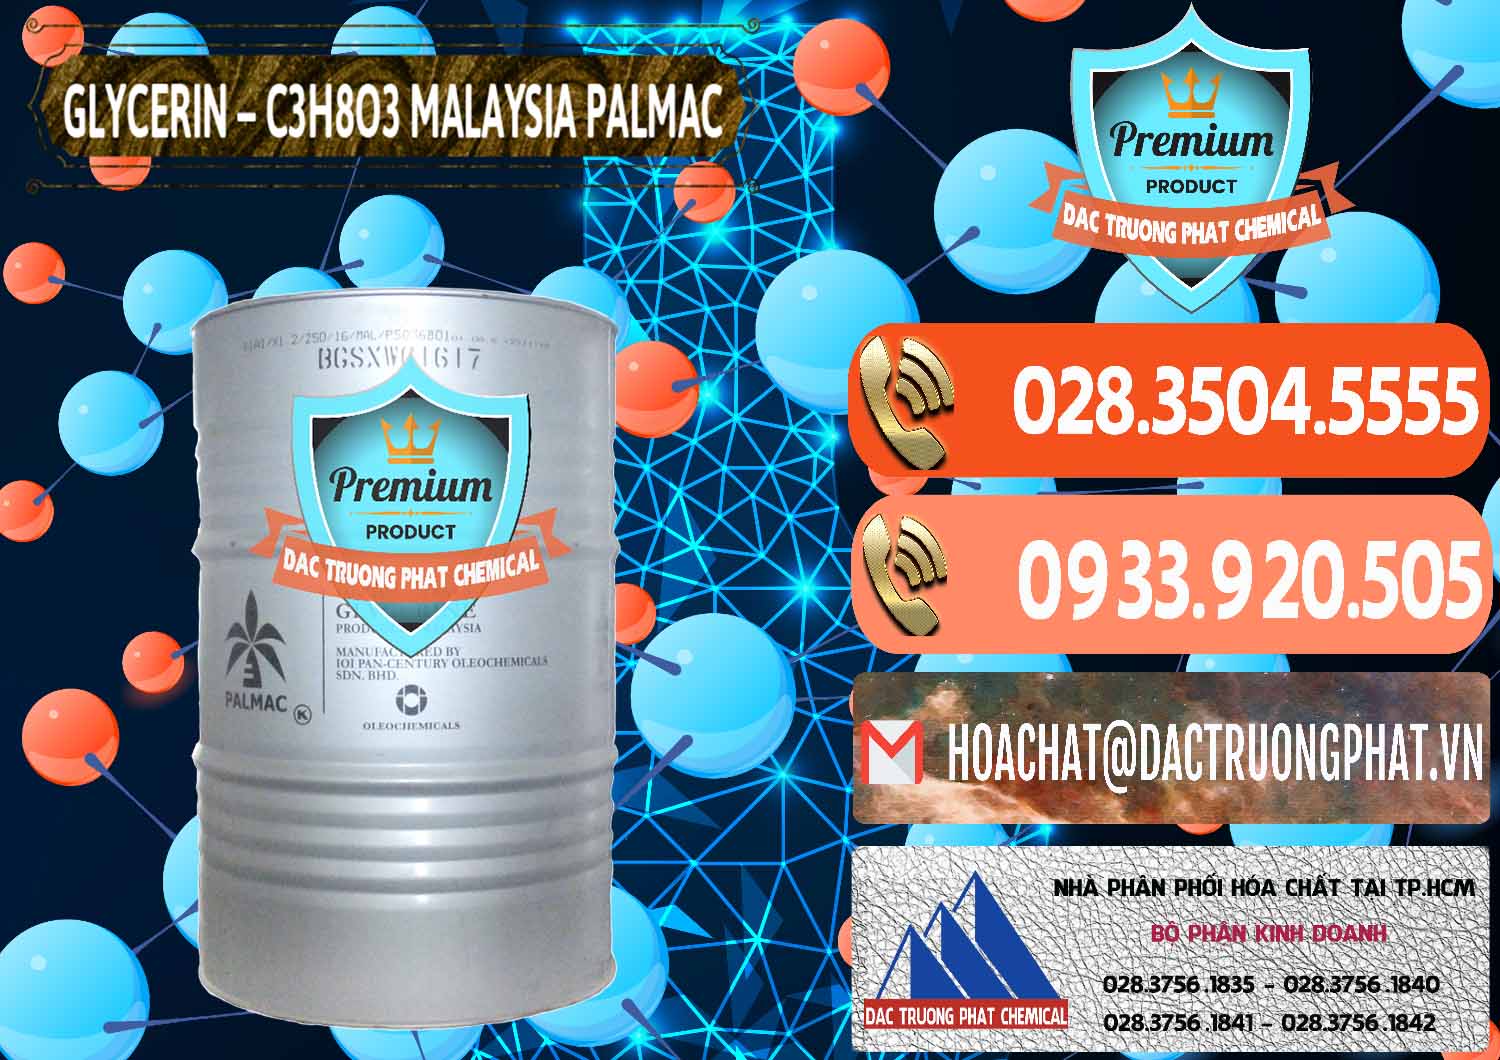 Cty chuyên bán - cung cấp Glycerin – C3H8O3 99.7% Malaysia Palmac - 0067 - Đơn vị cung cấp & phân phối hóa chất tại TP.HCM - hoachatmientay.com